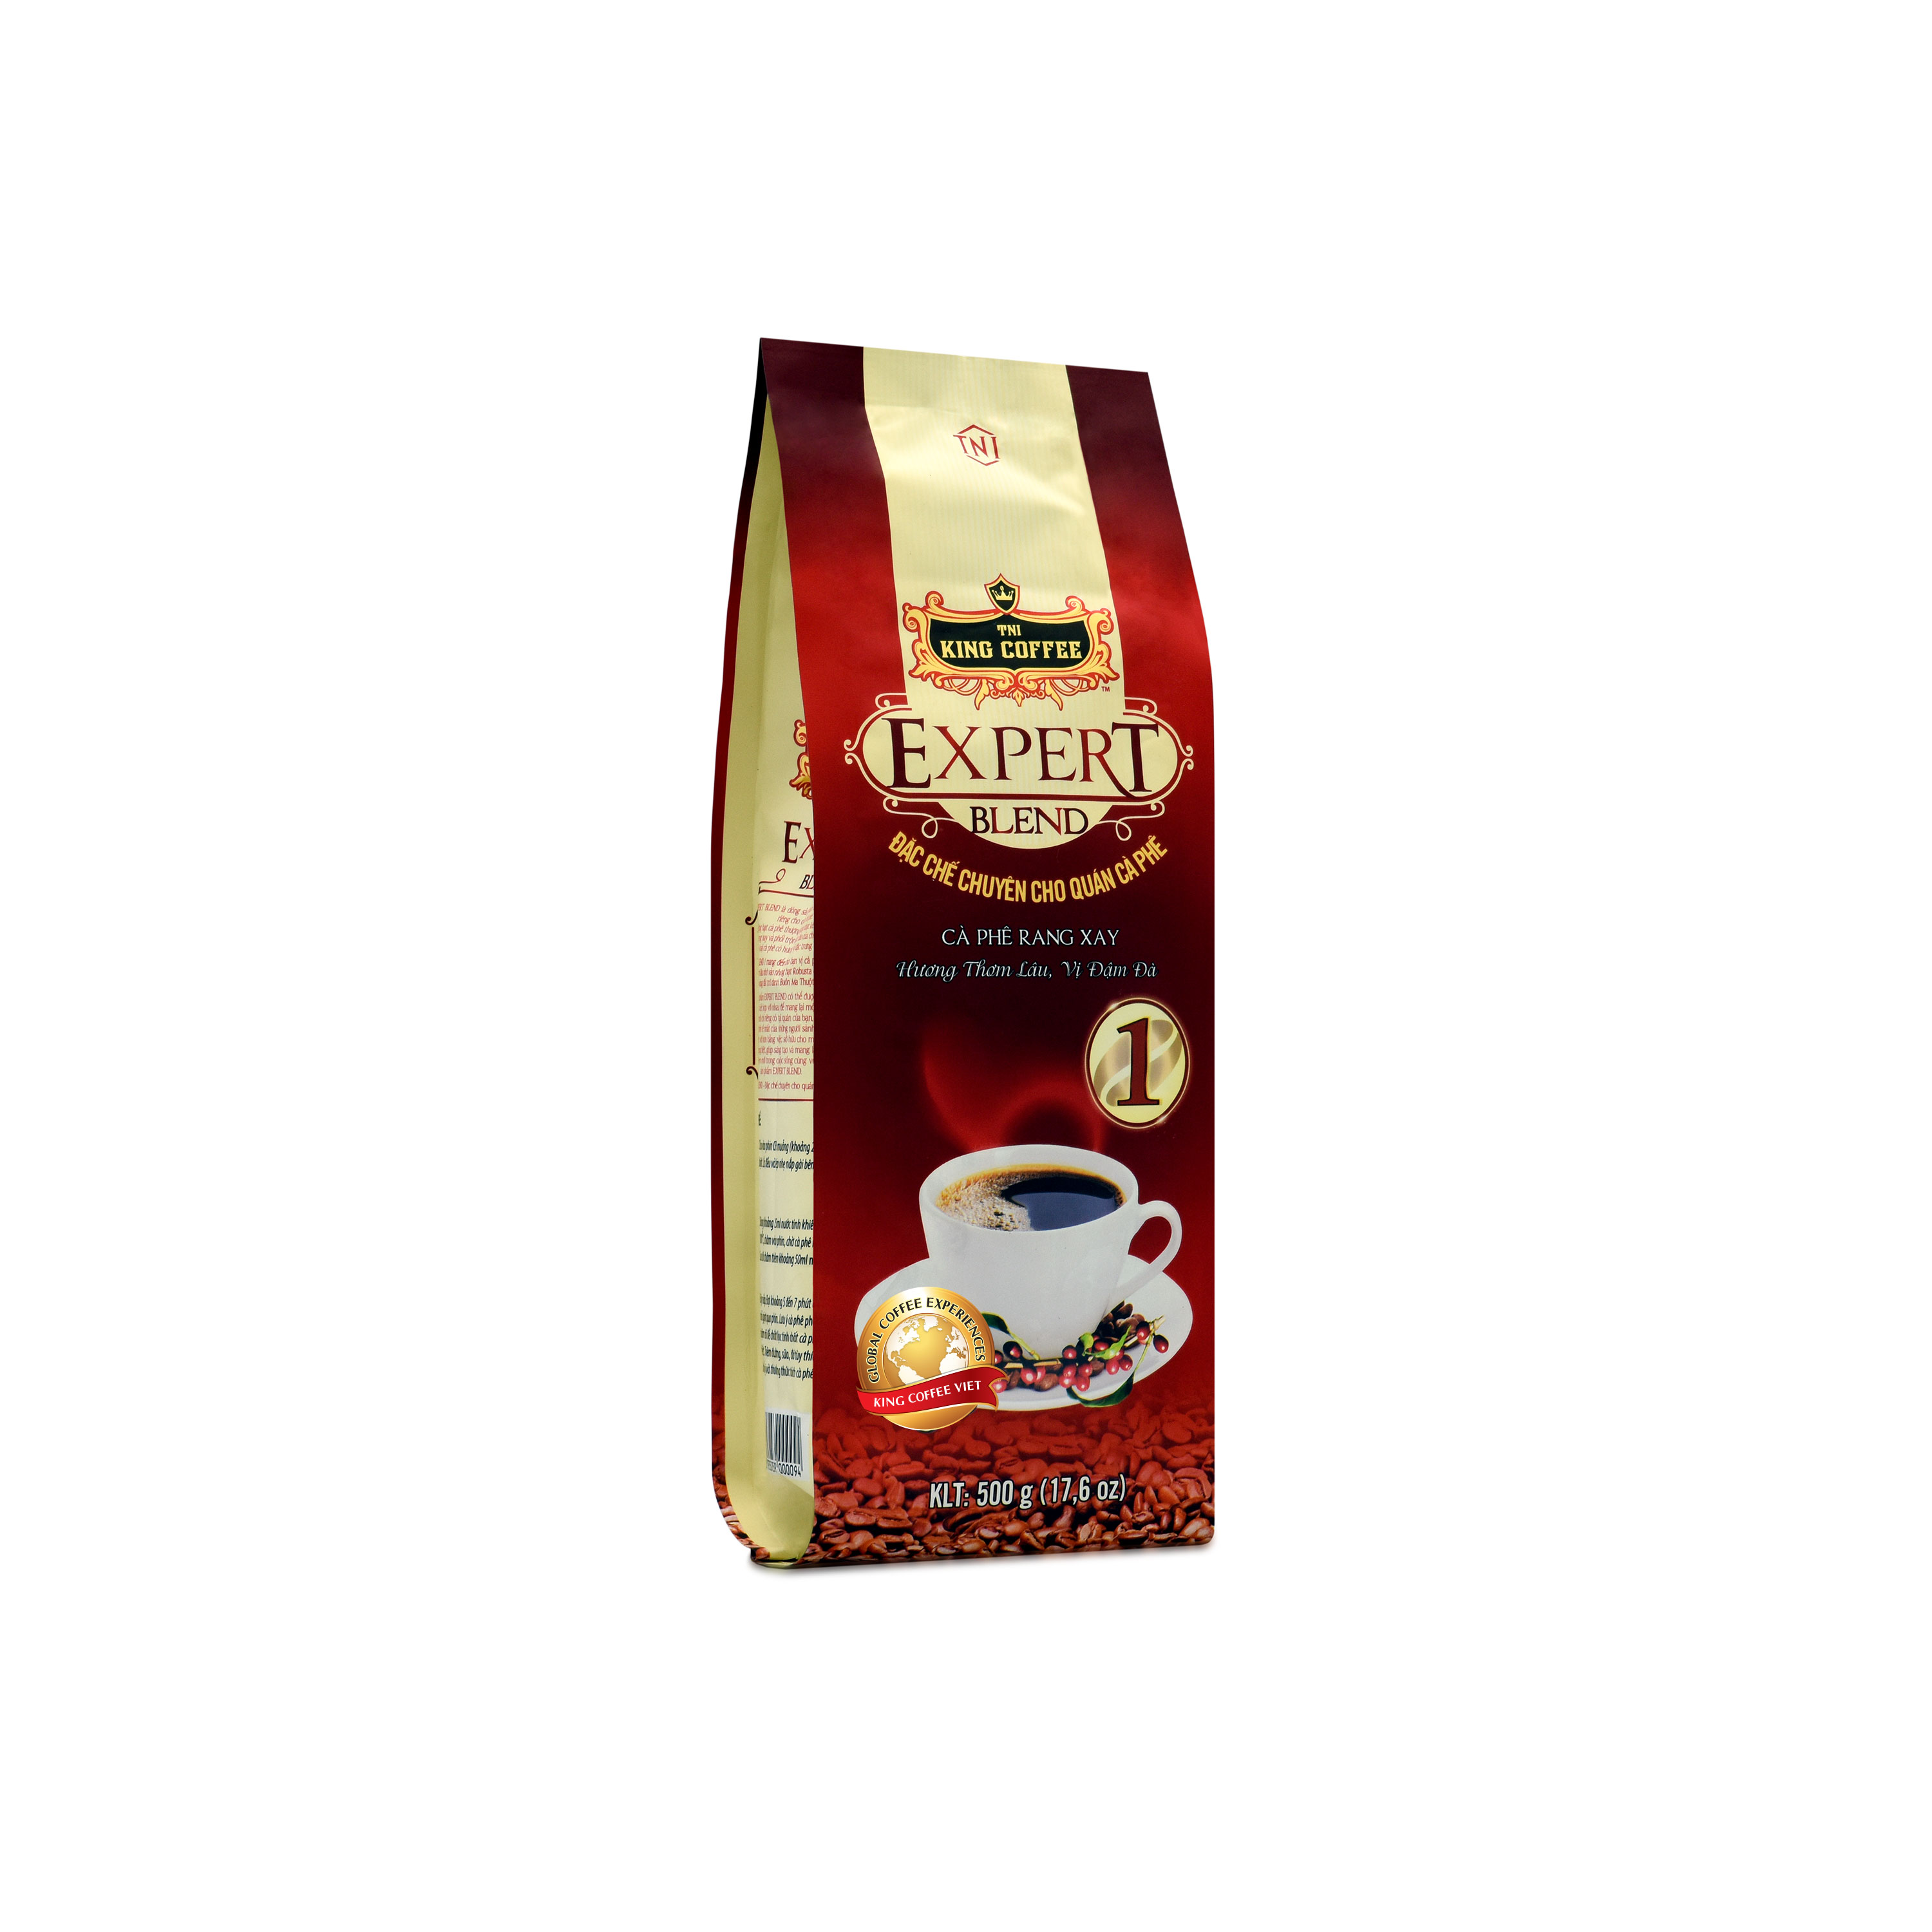 Combo 5 Cà Phê Rang Xay Expert Blend 1 KING COFFEE - Túi 500g + tặng 1 túi Expert cùng loại